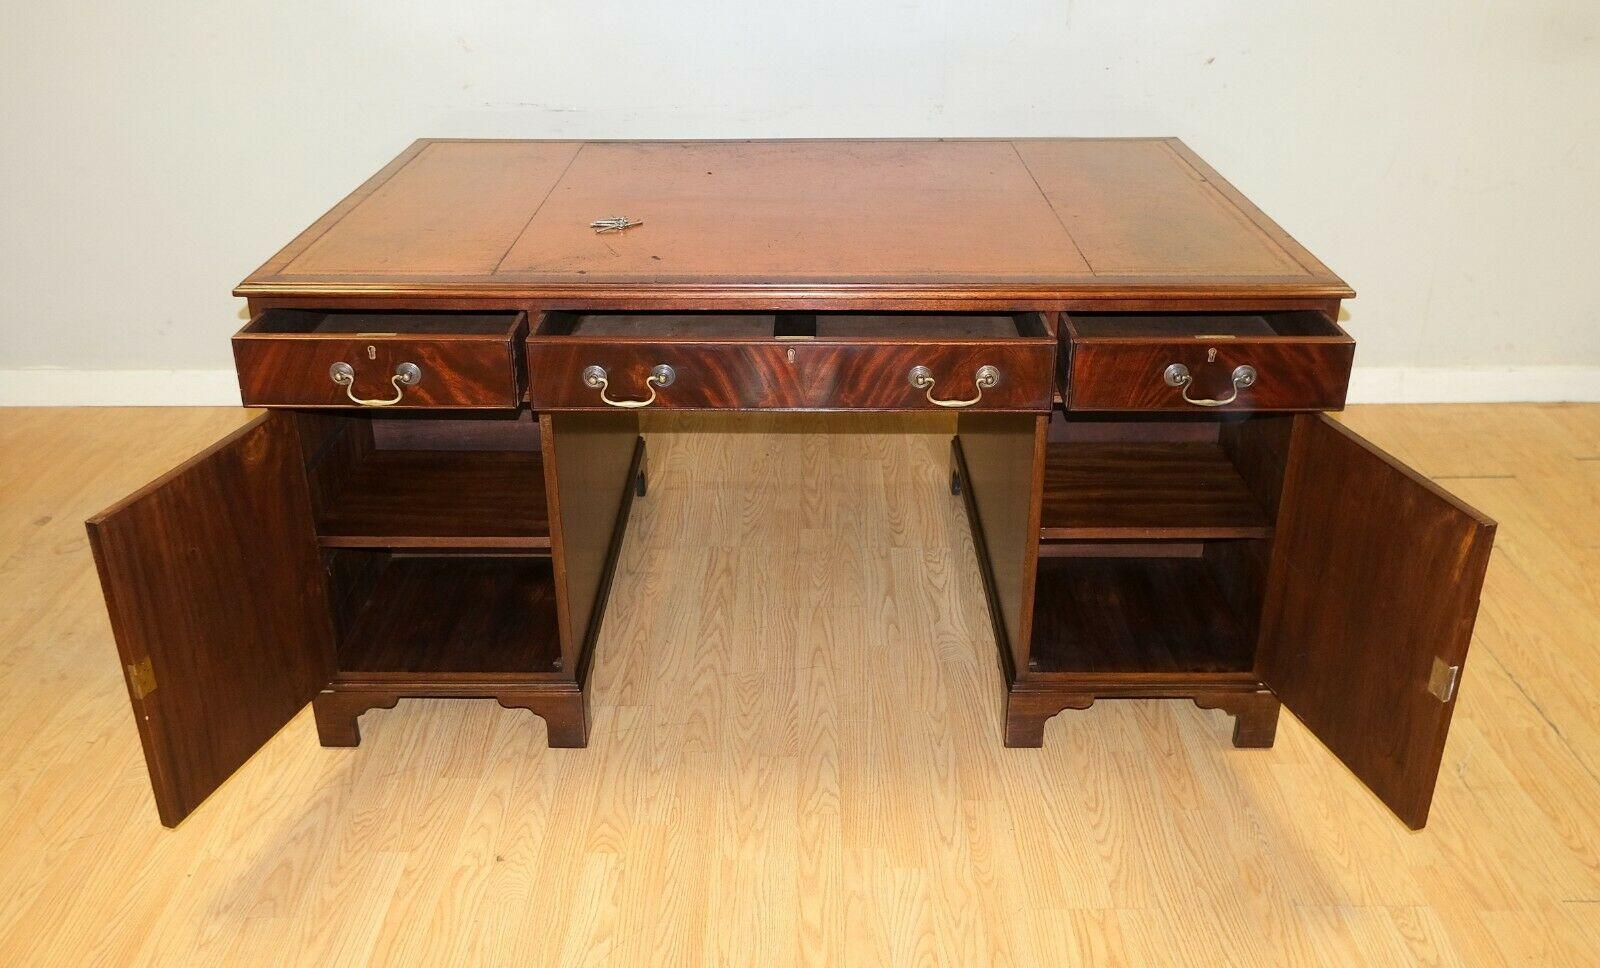 English Lovely Vintage Twin Pedestal Partner Desk Gold Tooled Brown Leather Top & Keys